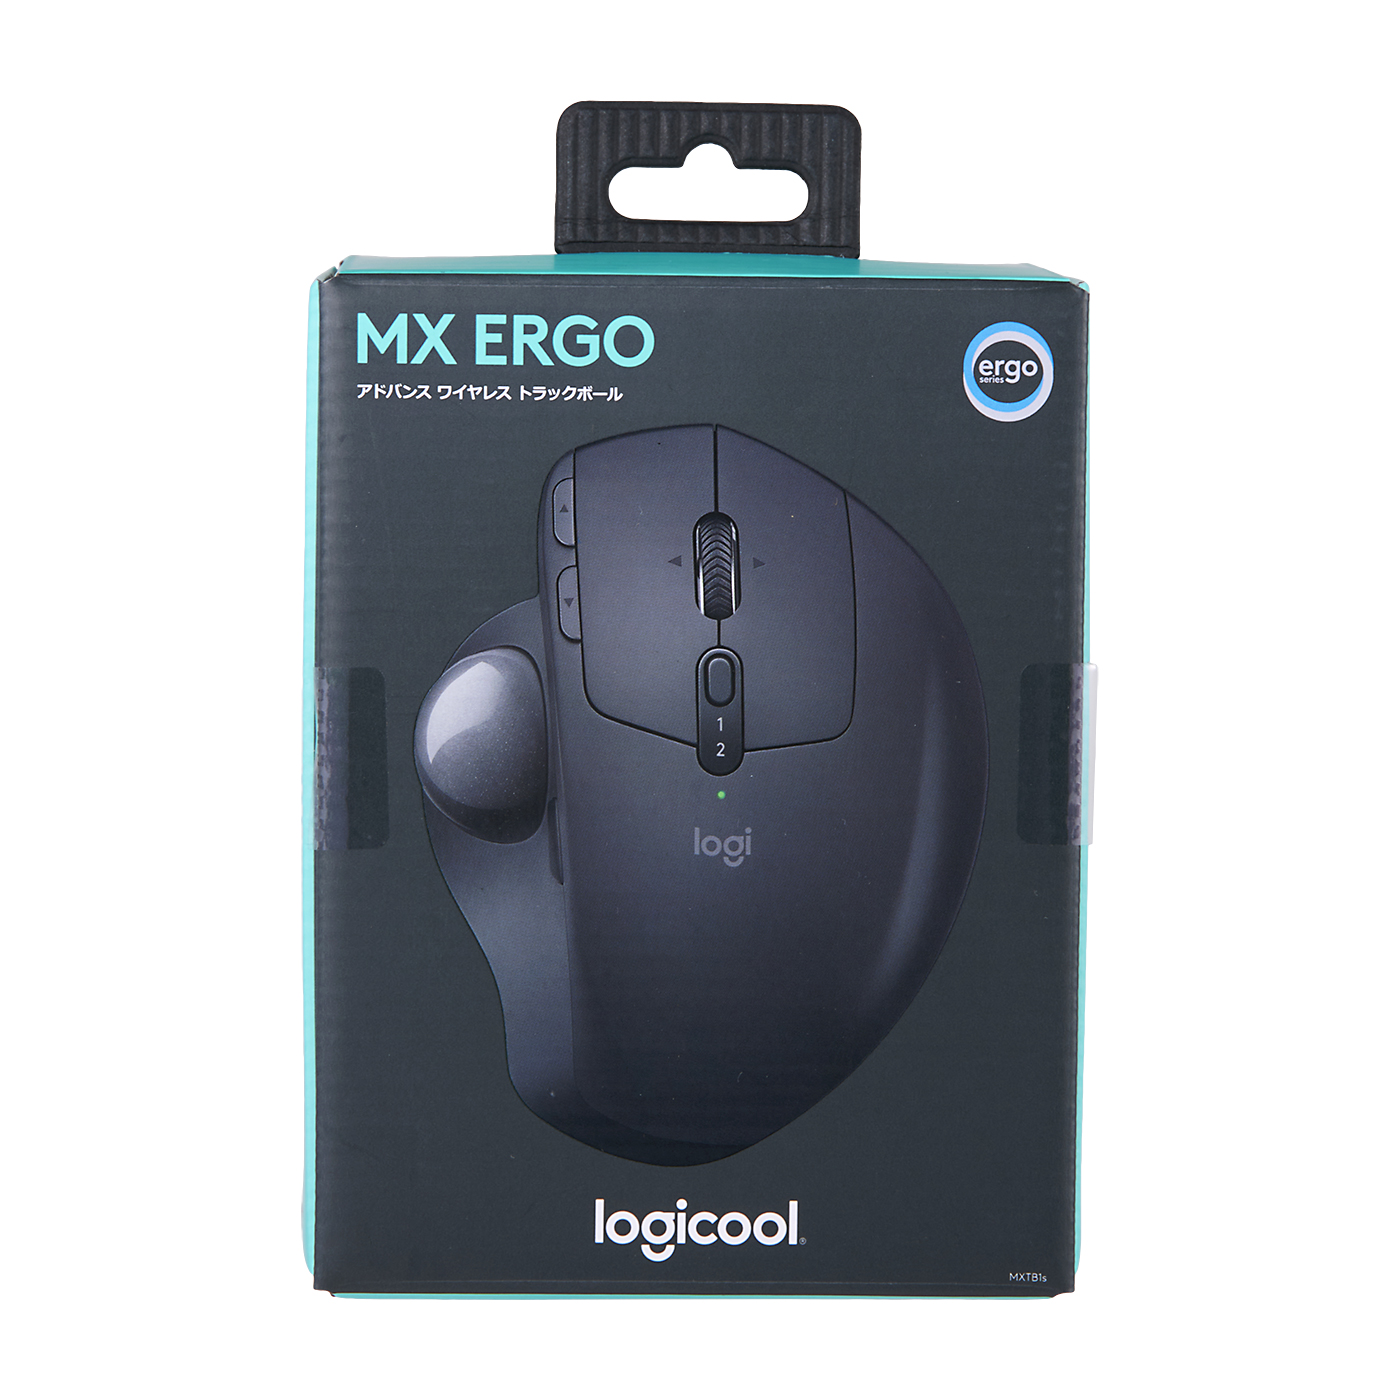 【新作登場得価】logicool MX ERGO マウス・トラックボール